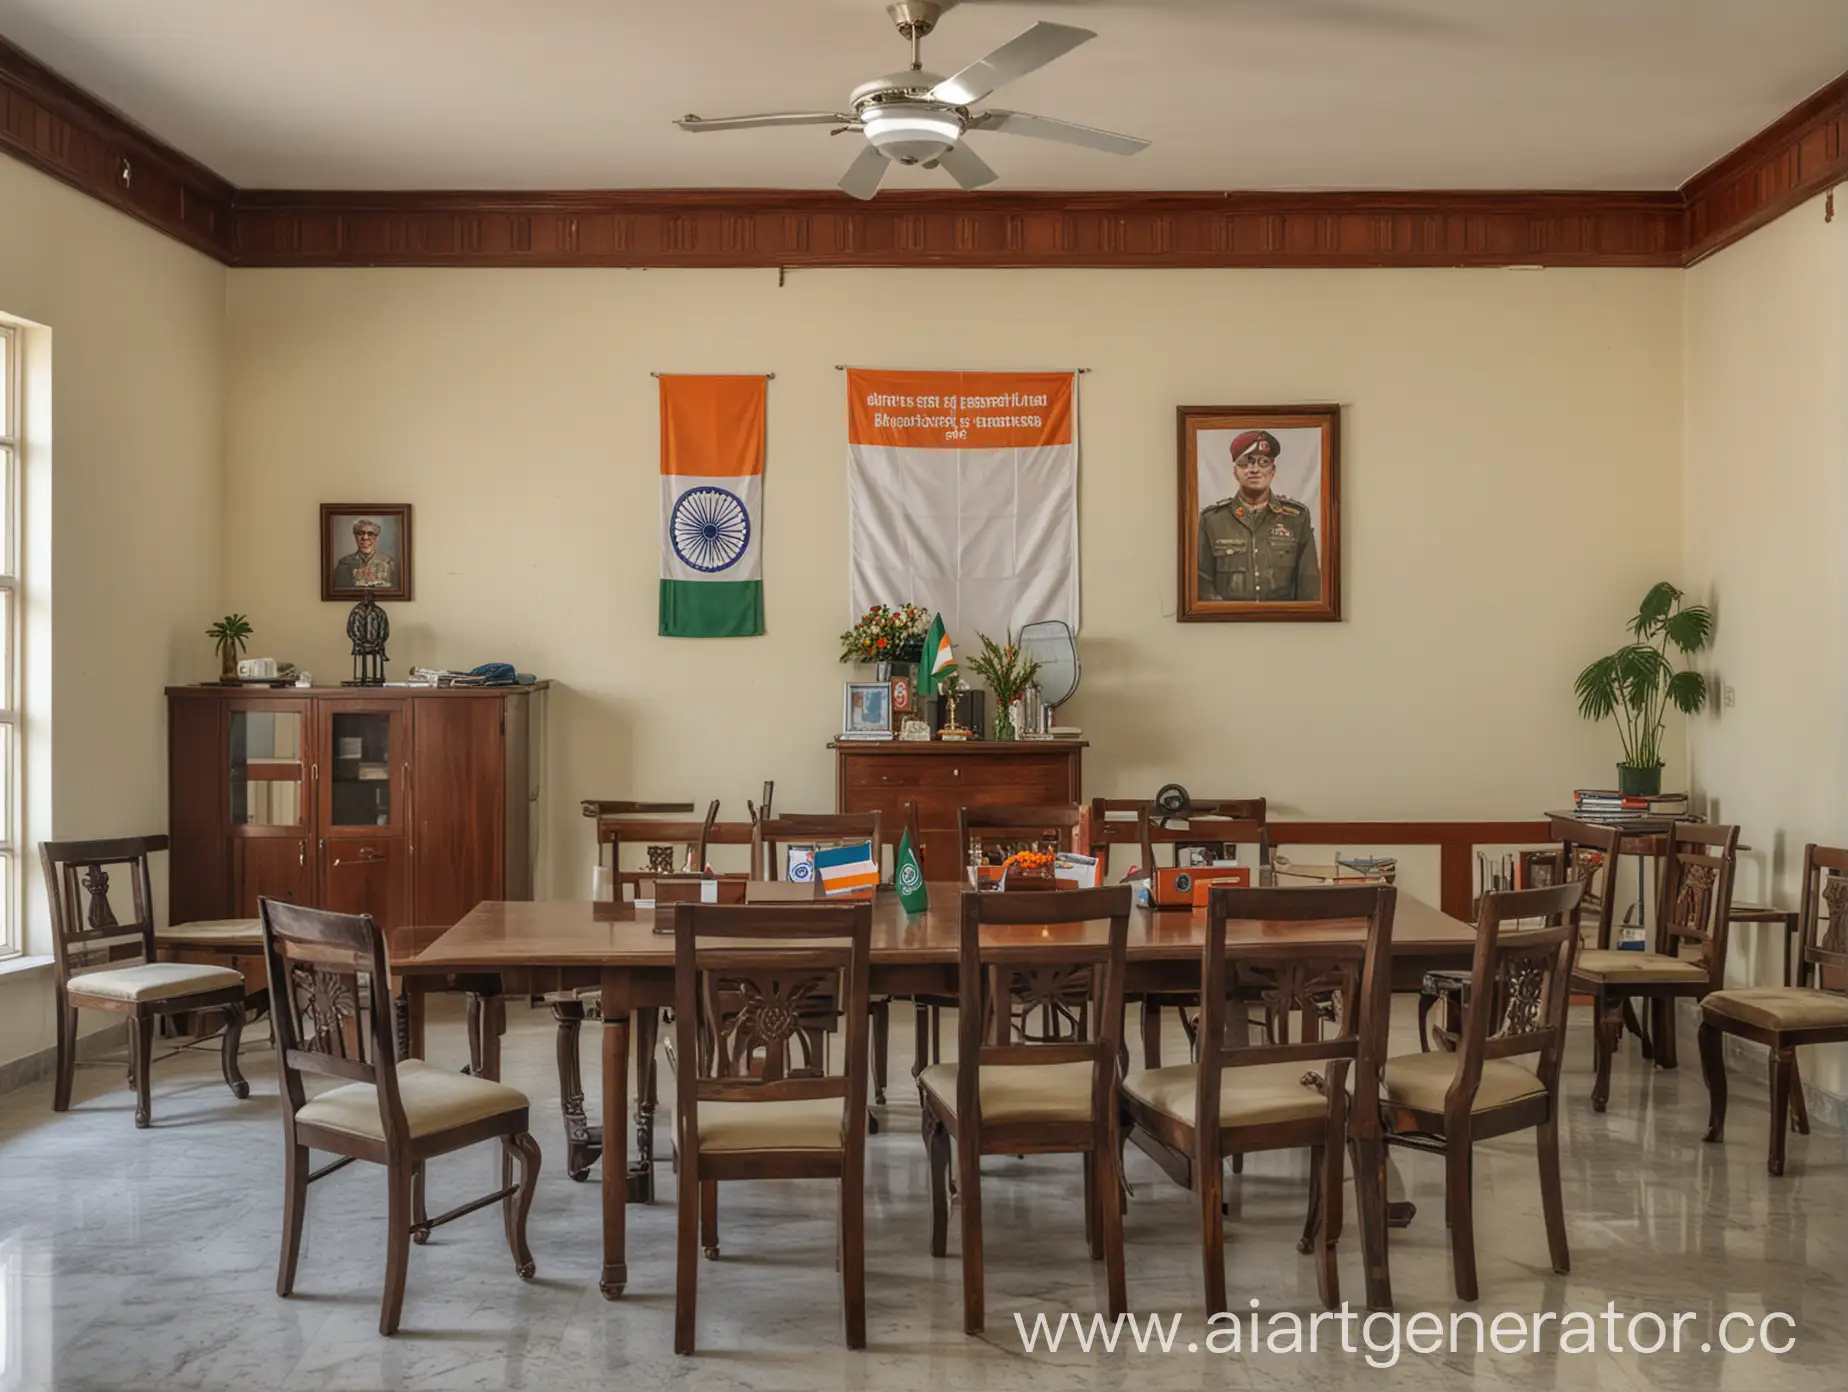 Современный кабинет военнослужащего министерства обороны индии, на фото должно находиться стол, стулья, флаг индии, карта индии. Картинка должна быть цветная